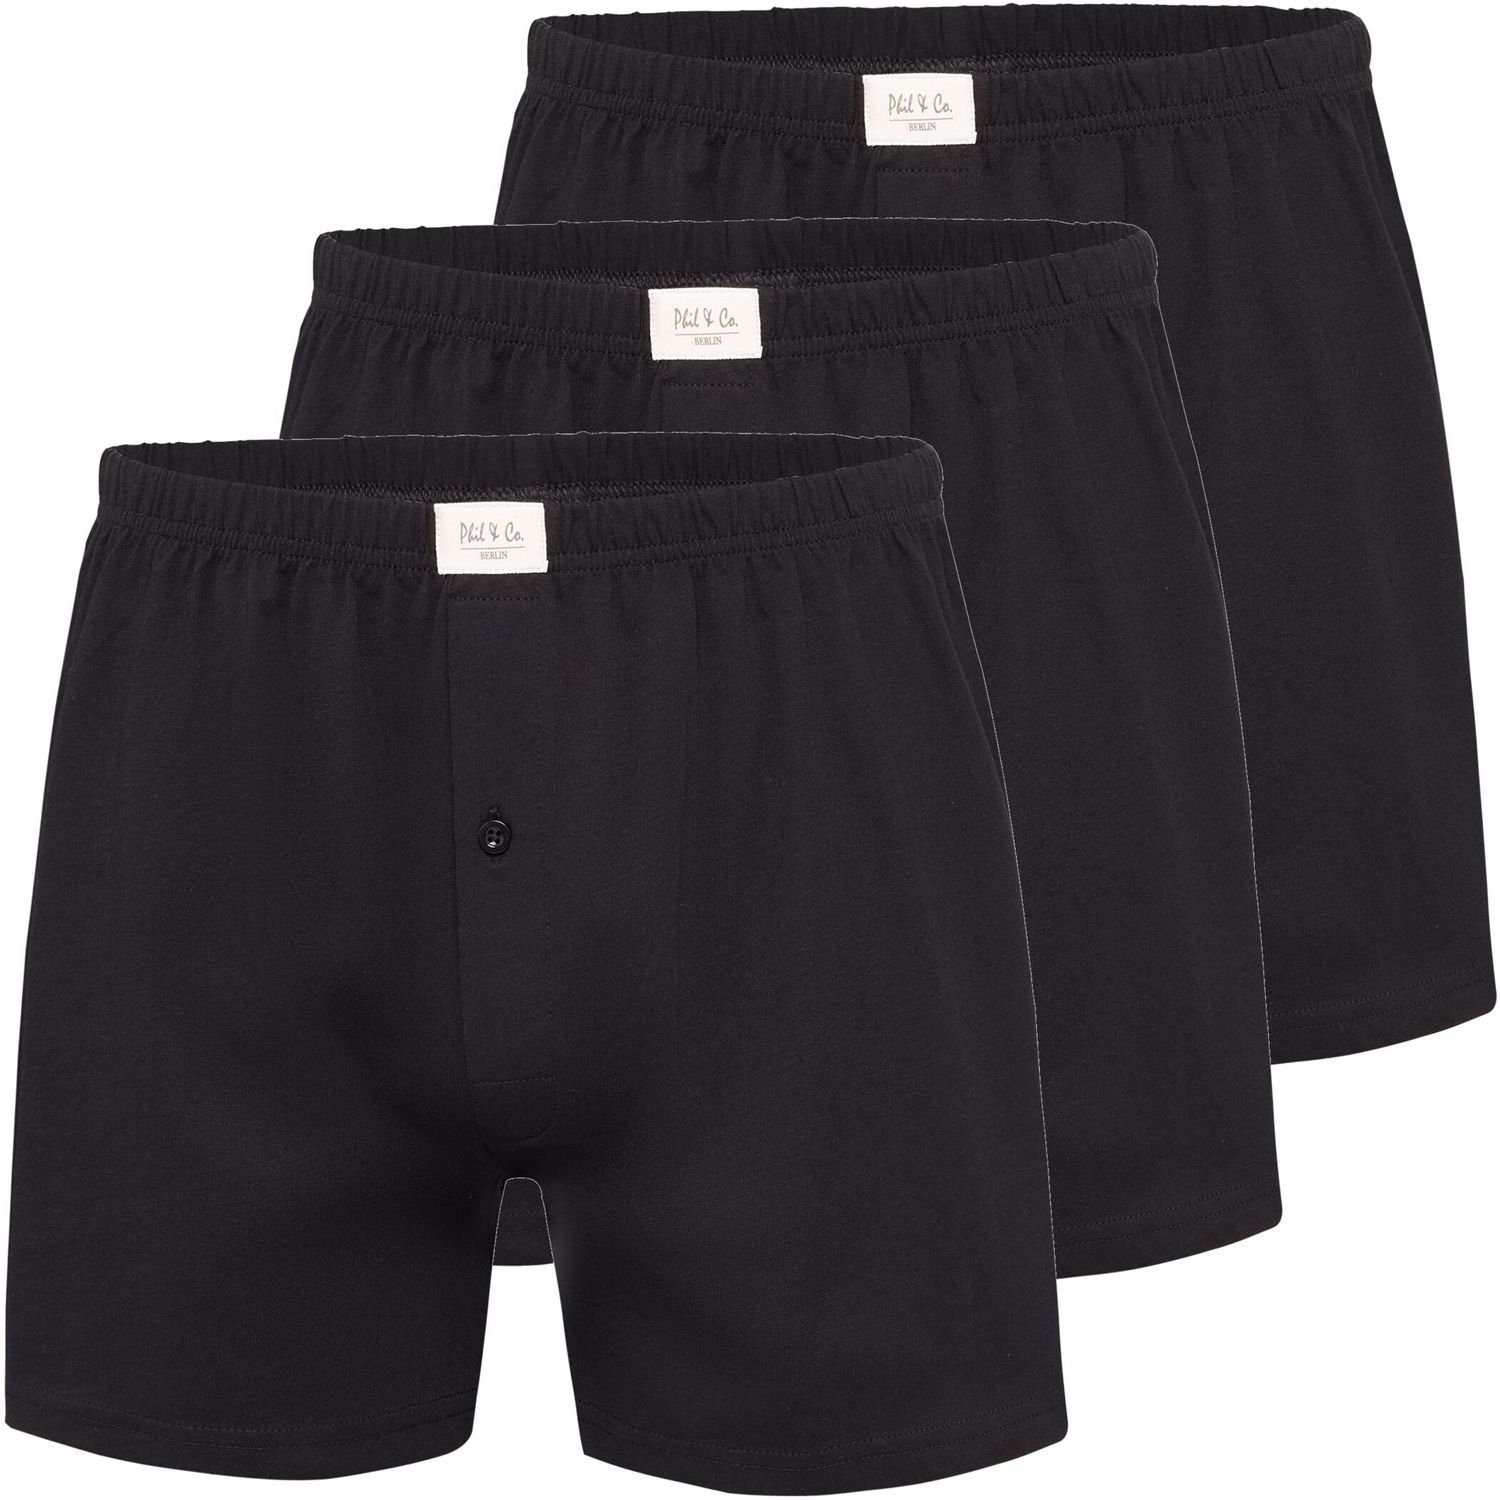 Phil & Co. Boxershorts 3 Stück Phil & Co Jersey Shorts Boxershorts Pant Unterhosen Herren große Größen schwarz oder blau M - 5XL (3-St)